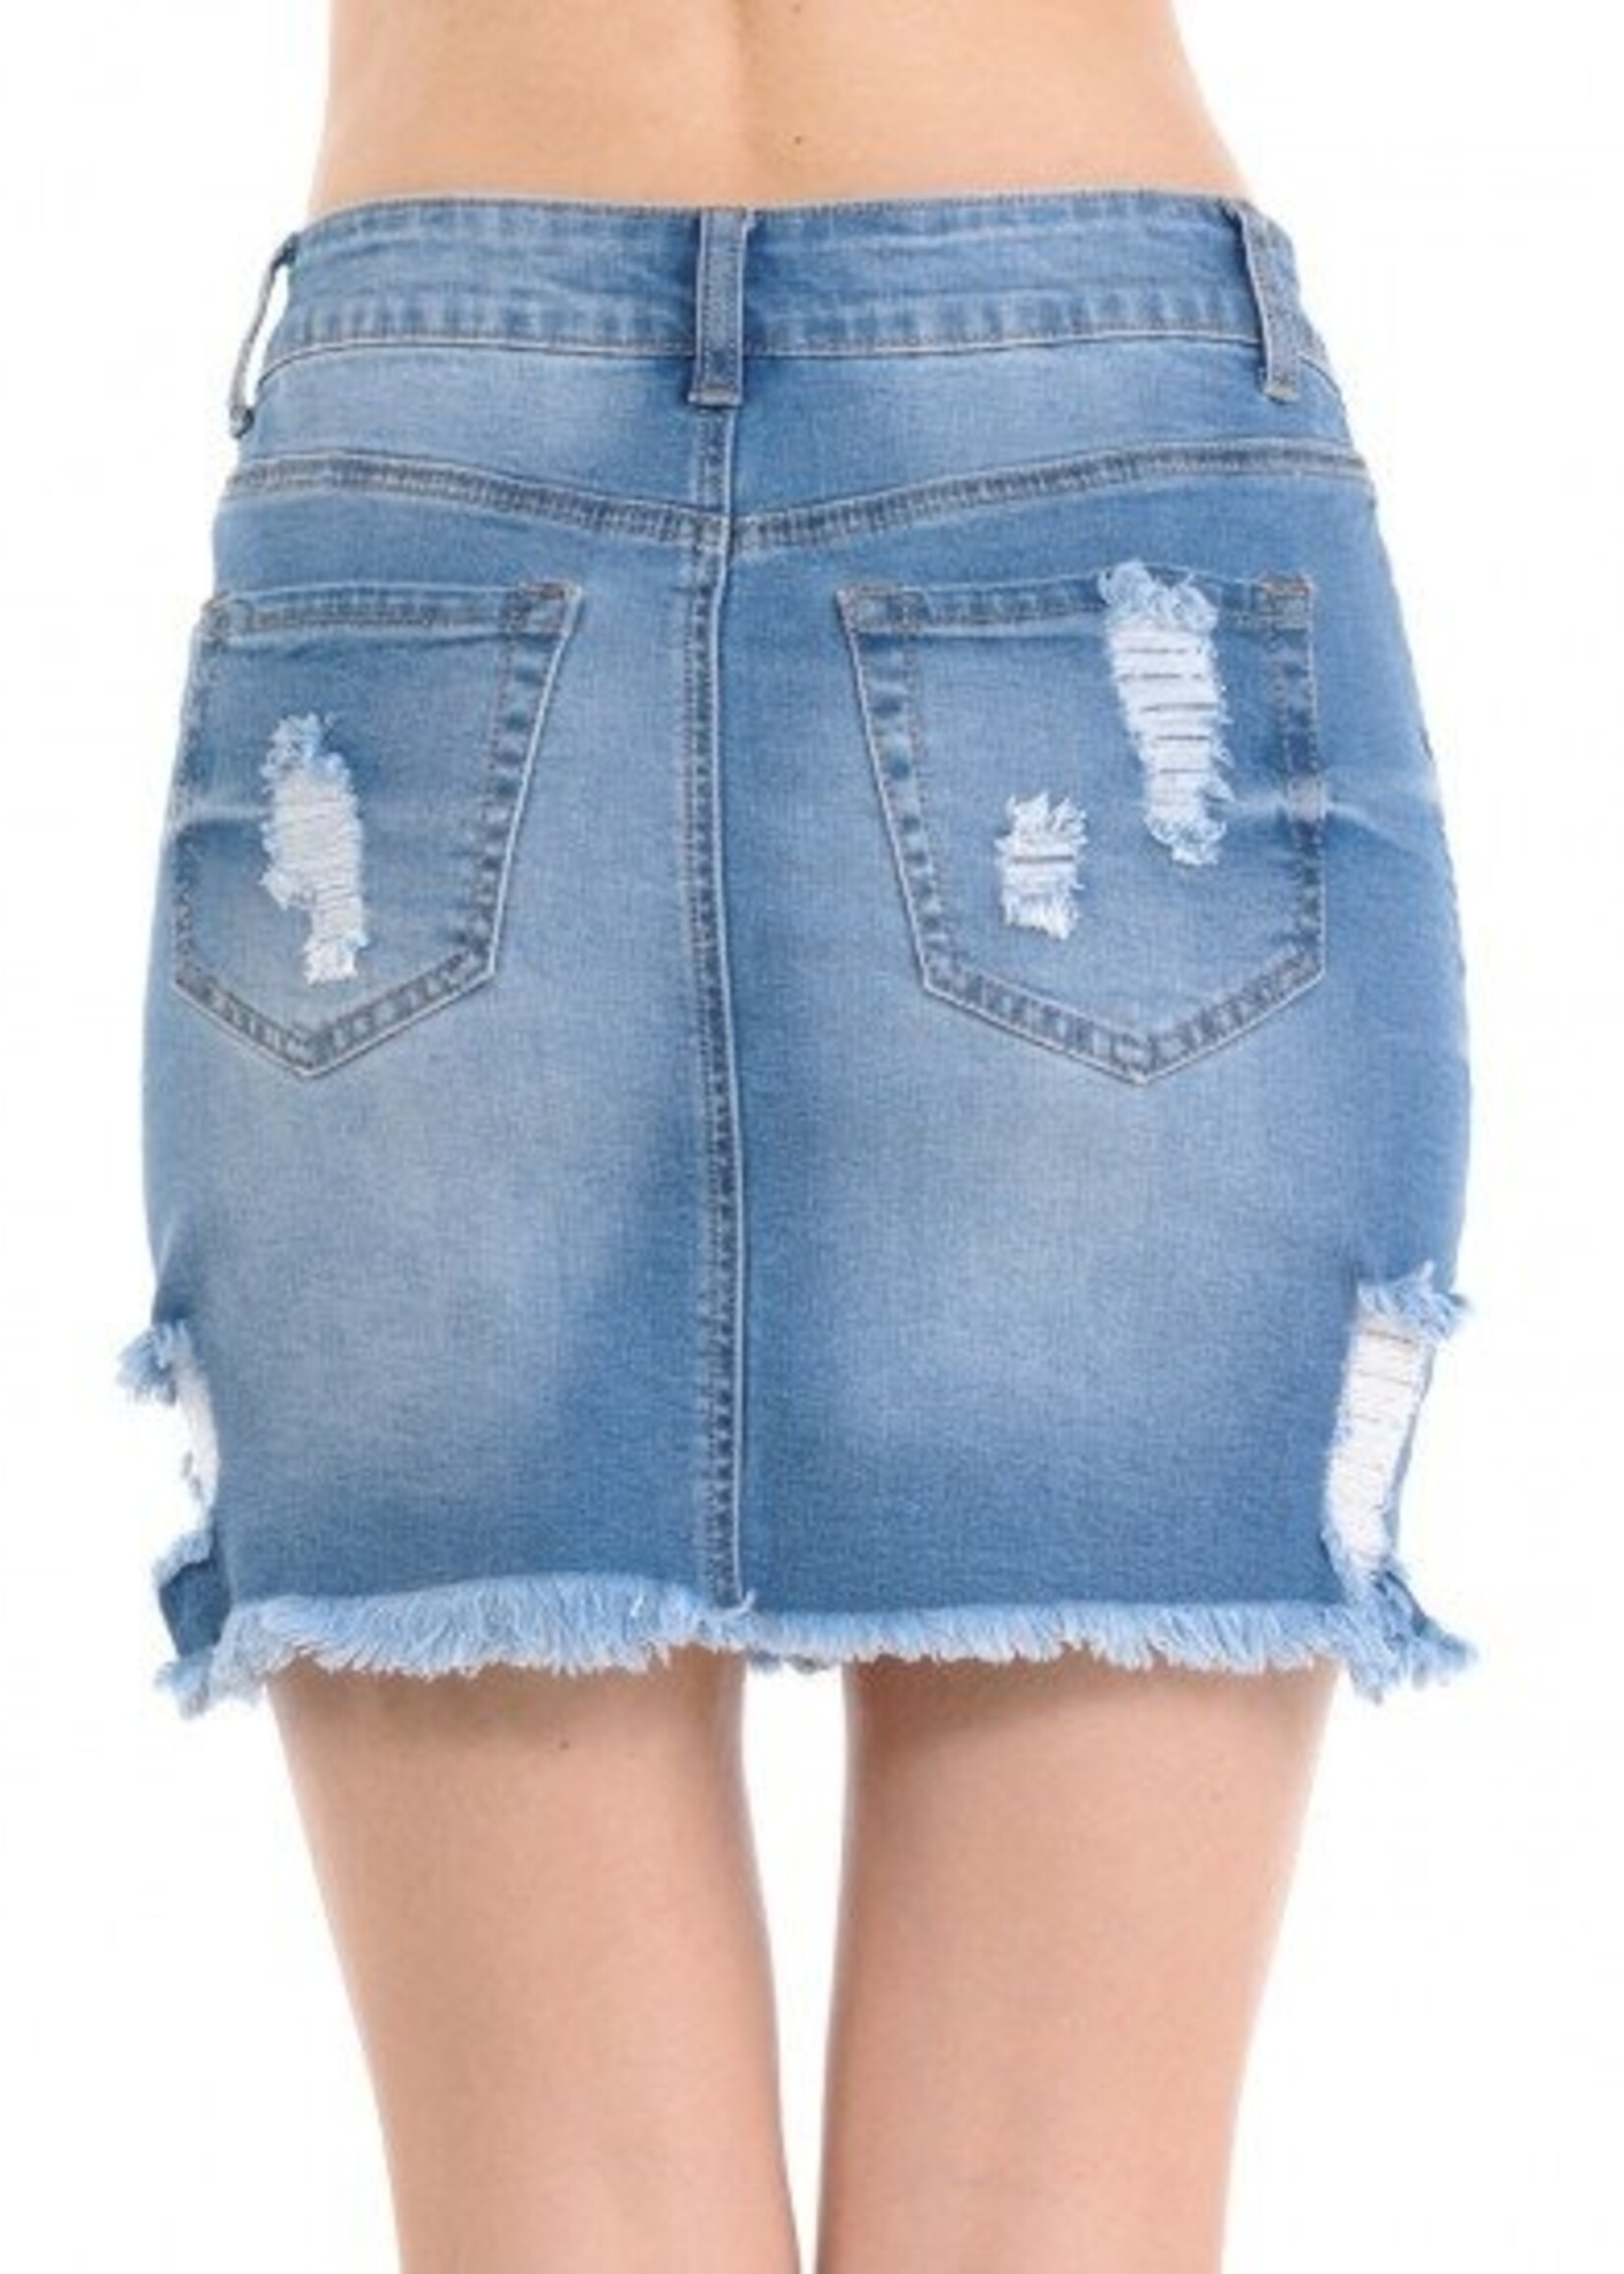 Wax Jeans Skirt Women Small Blue Mini Pencil Denim Fringe Distressed Light  Wash | eBay